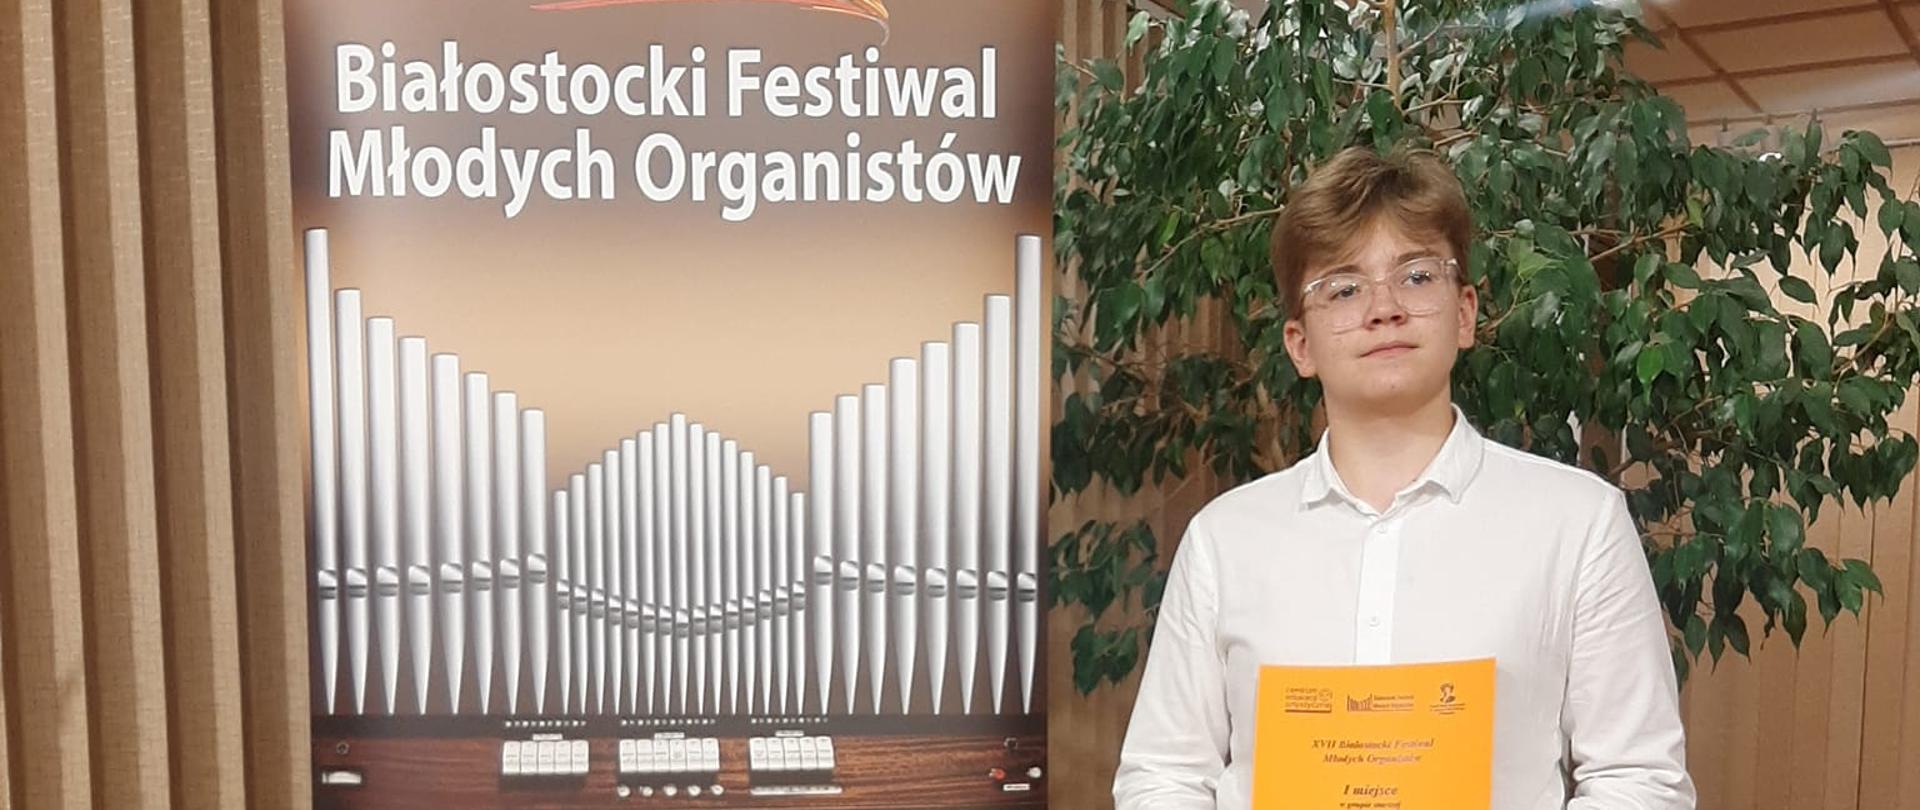 Po lewej stronie baner XVII Białostockiego Festiwalu Młodych Organistów, obok niego Bartosz Wesołek trzymający w rękach dyplom zajęcia I miejsca